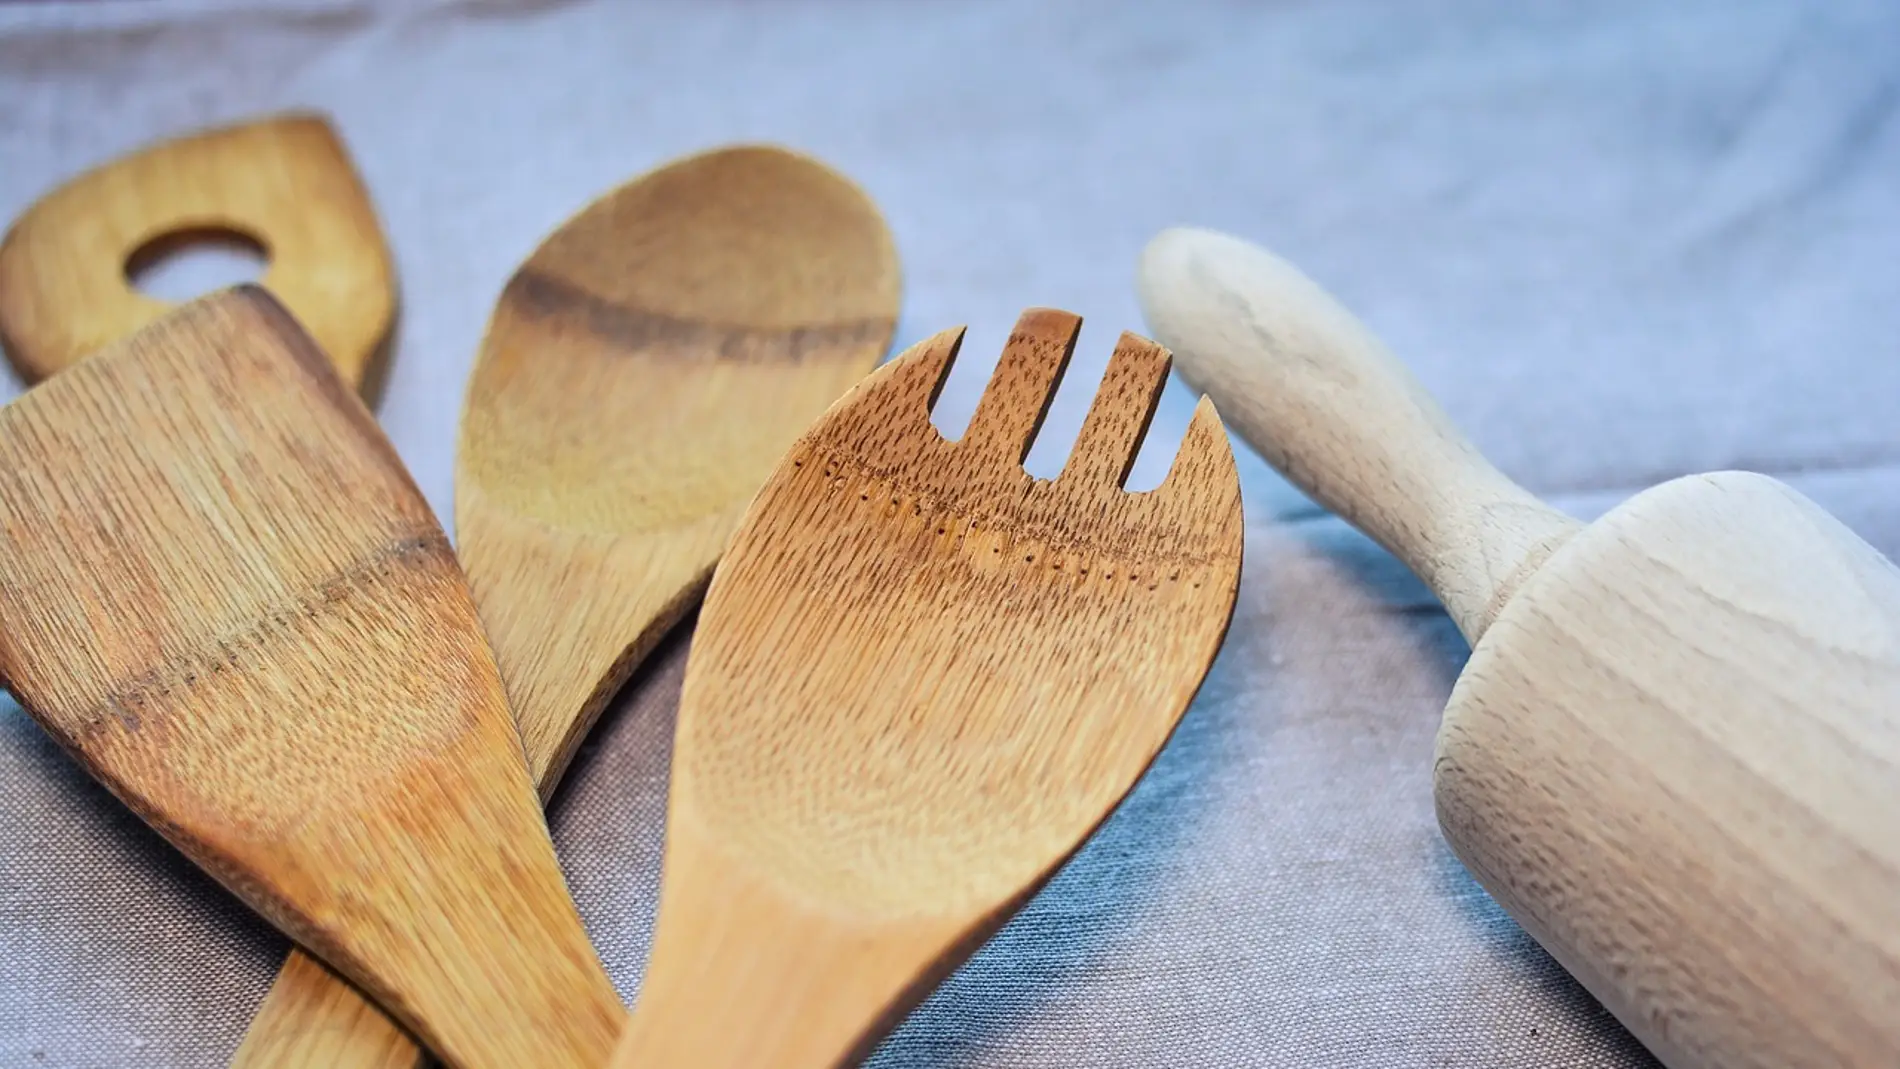 Este es el motivo por el que no hay que utilizar utensilios de madera para cocinar: podría ser un riesgo para la salud